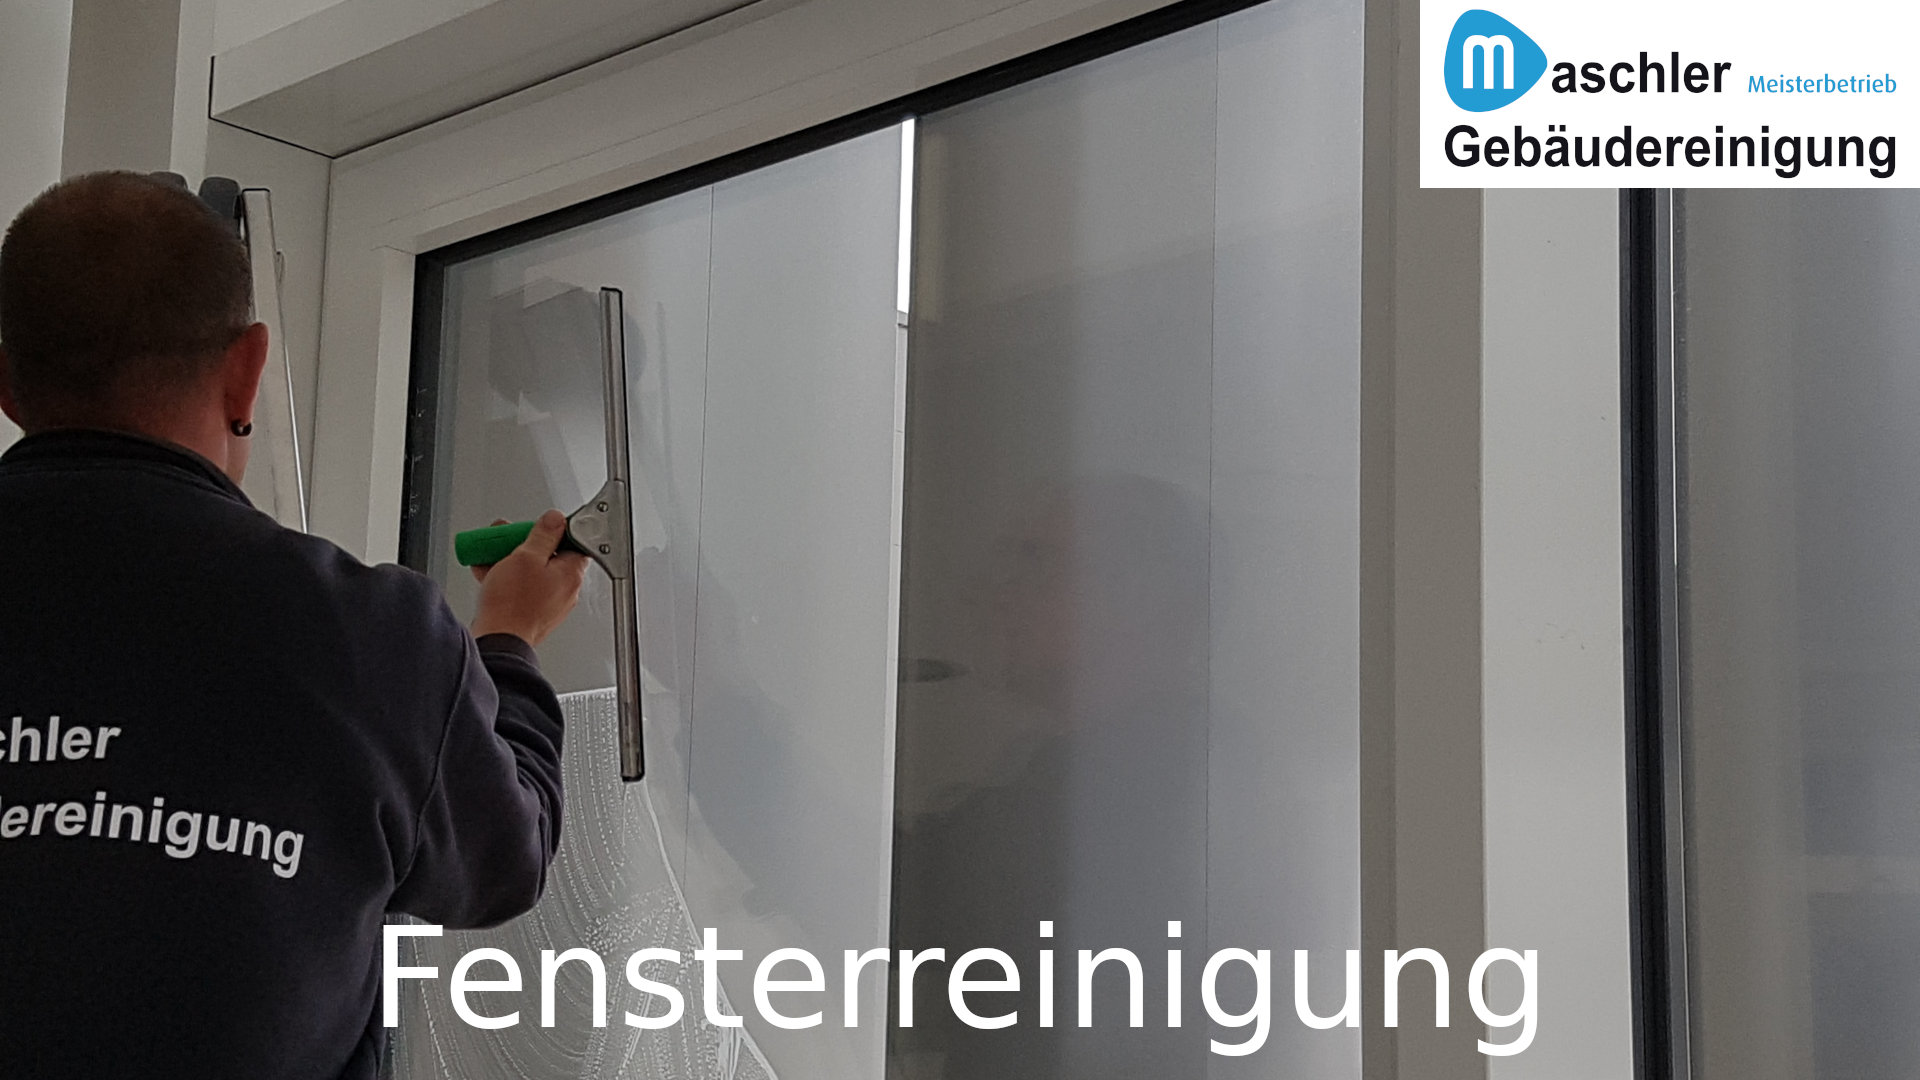 Fensterreinigung - Gebäudereinigung Maschler GmbH